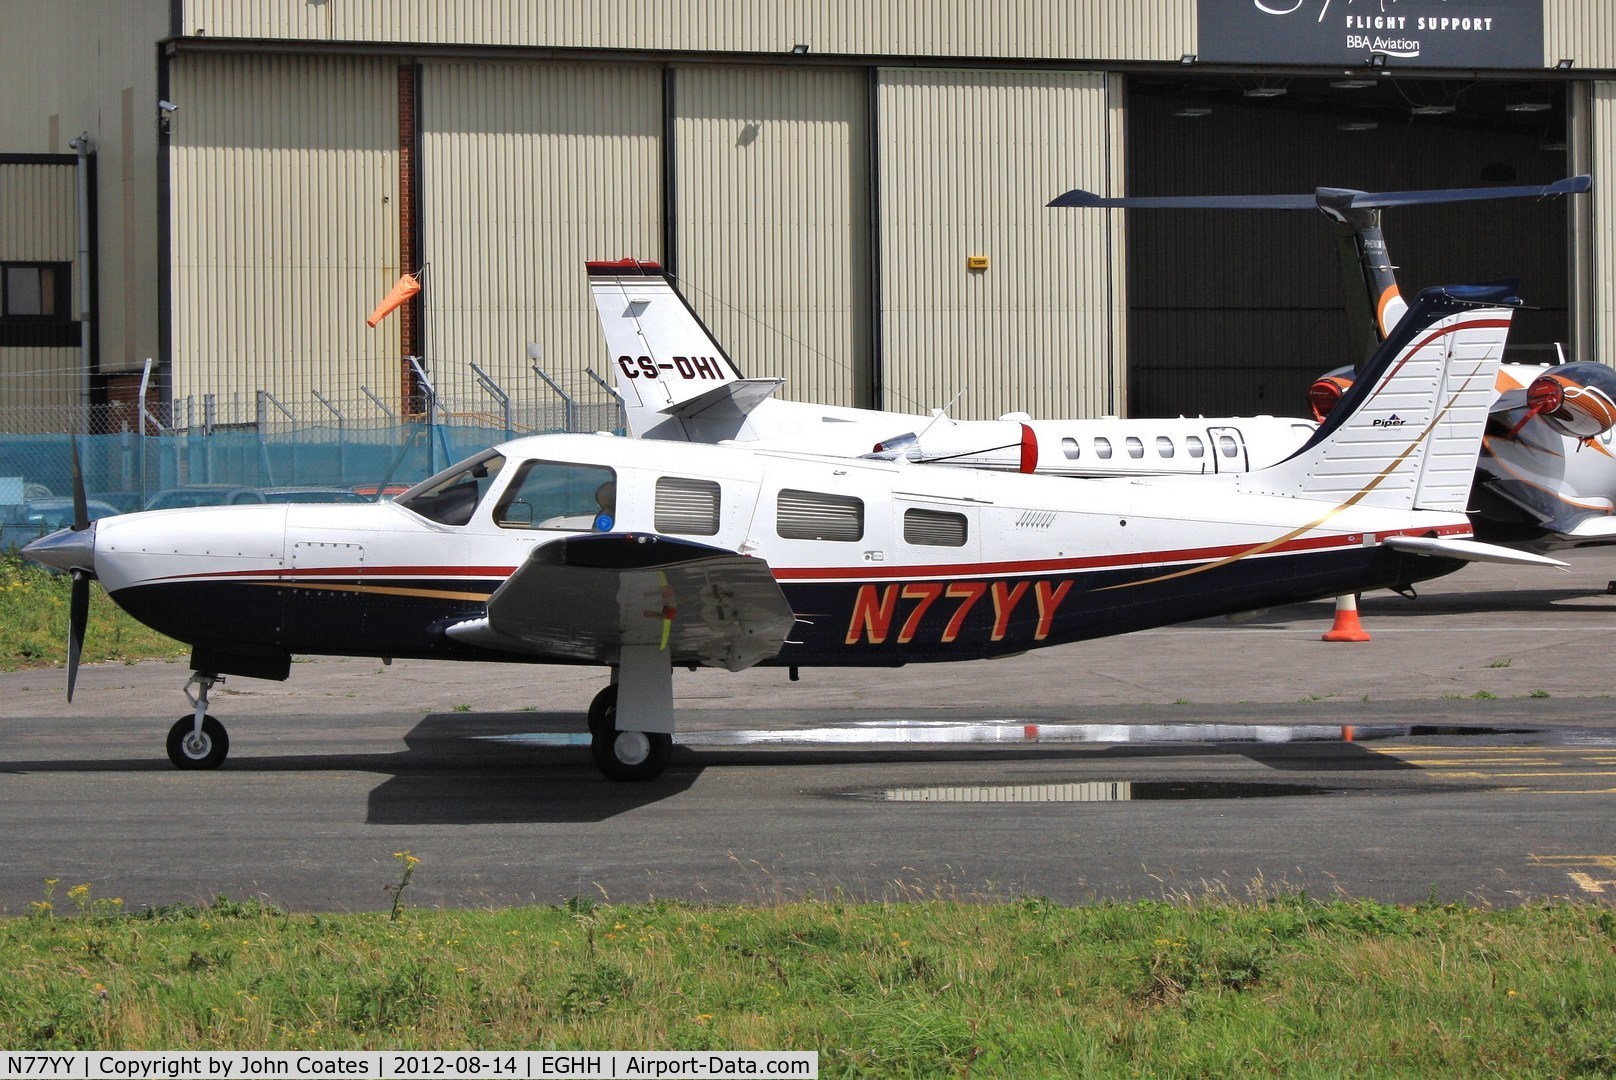 N77YY, 1999 Piper PA-32R-301T Turbo Saratoga C/N 3257120, On way to paintshop